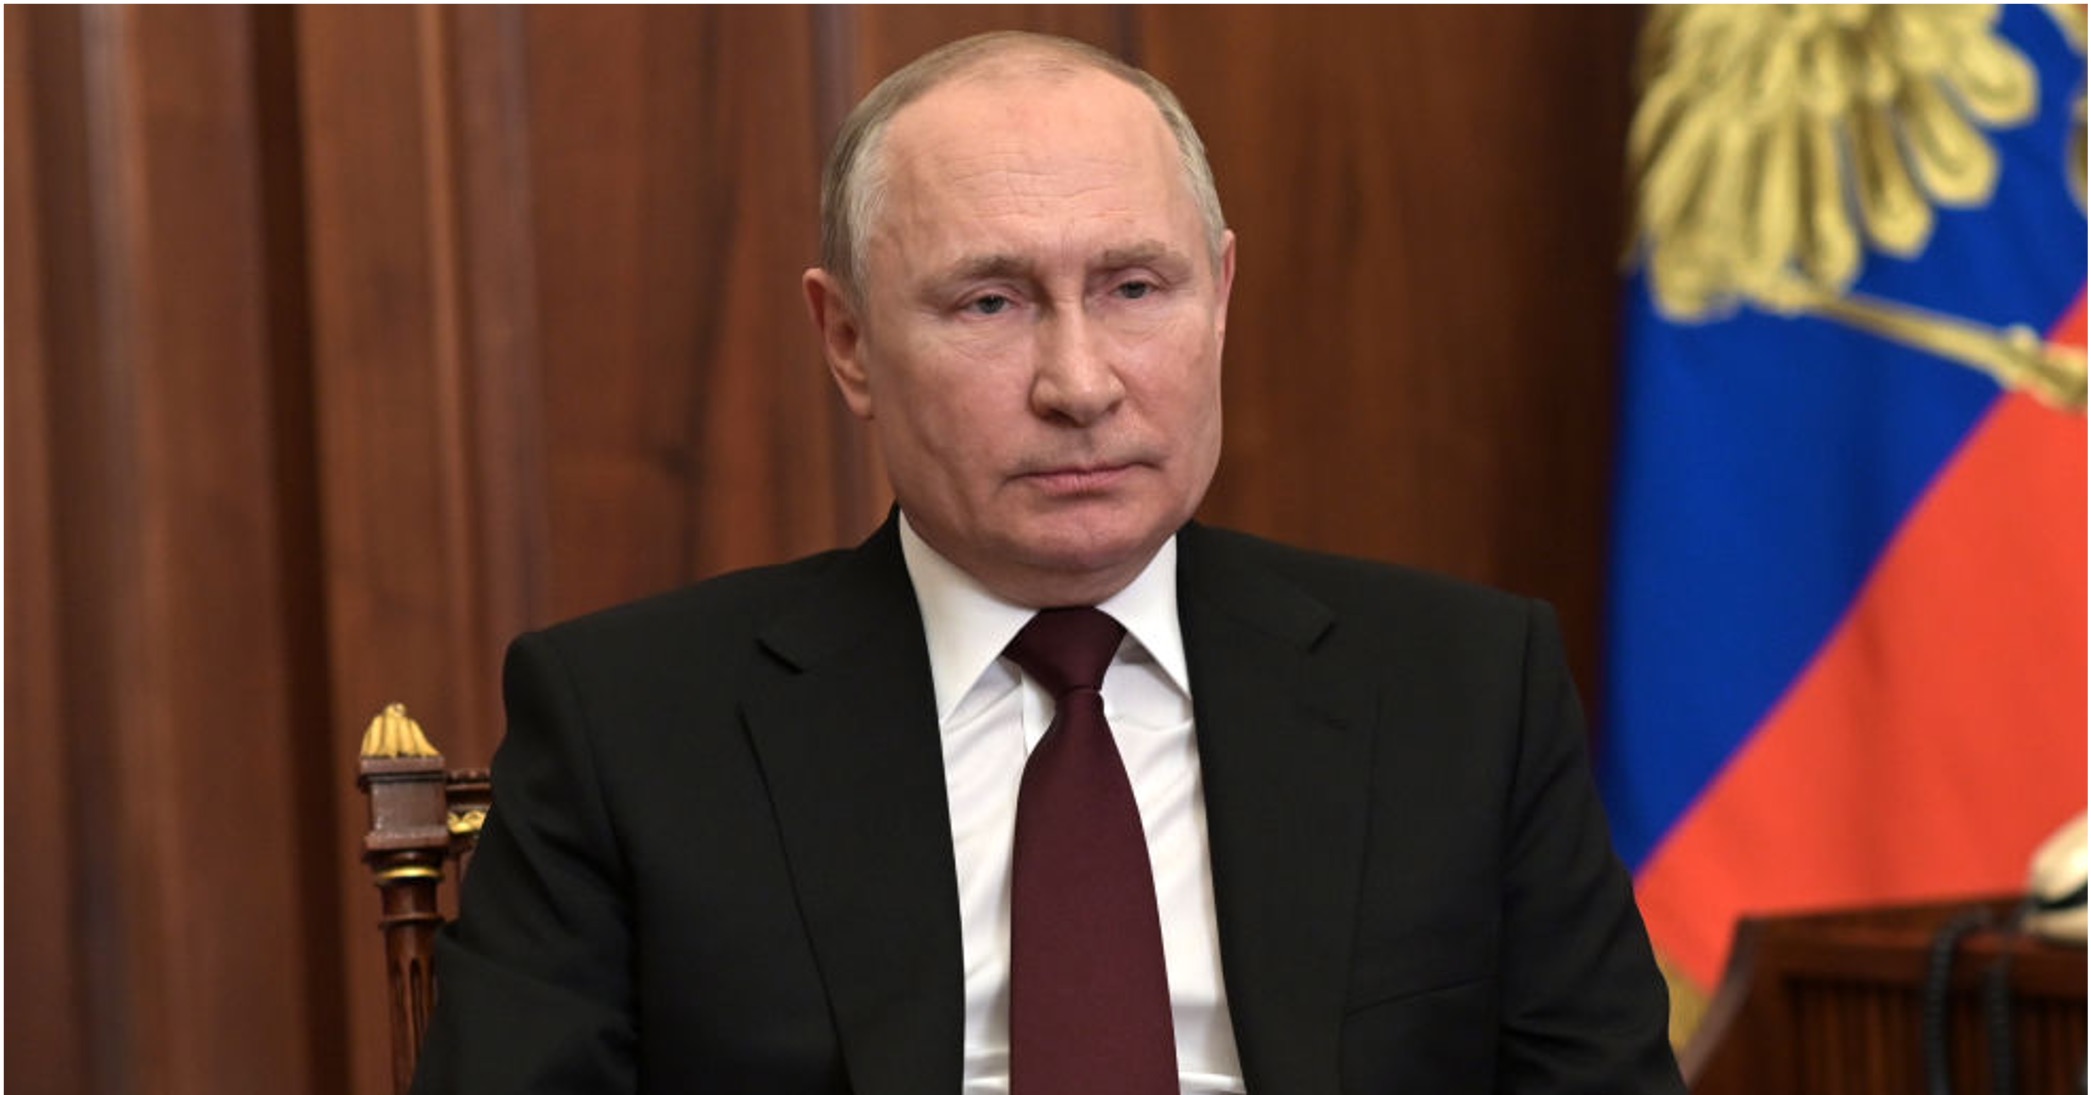 Vladimir Putin orders Russian troops into separatist regions of eastern Ukraine